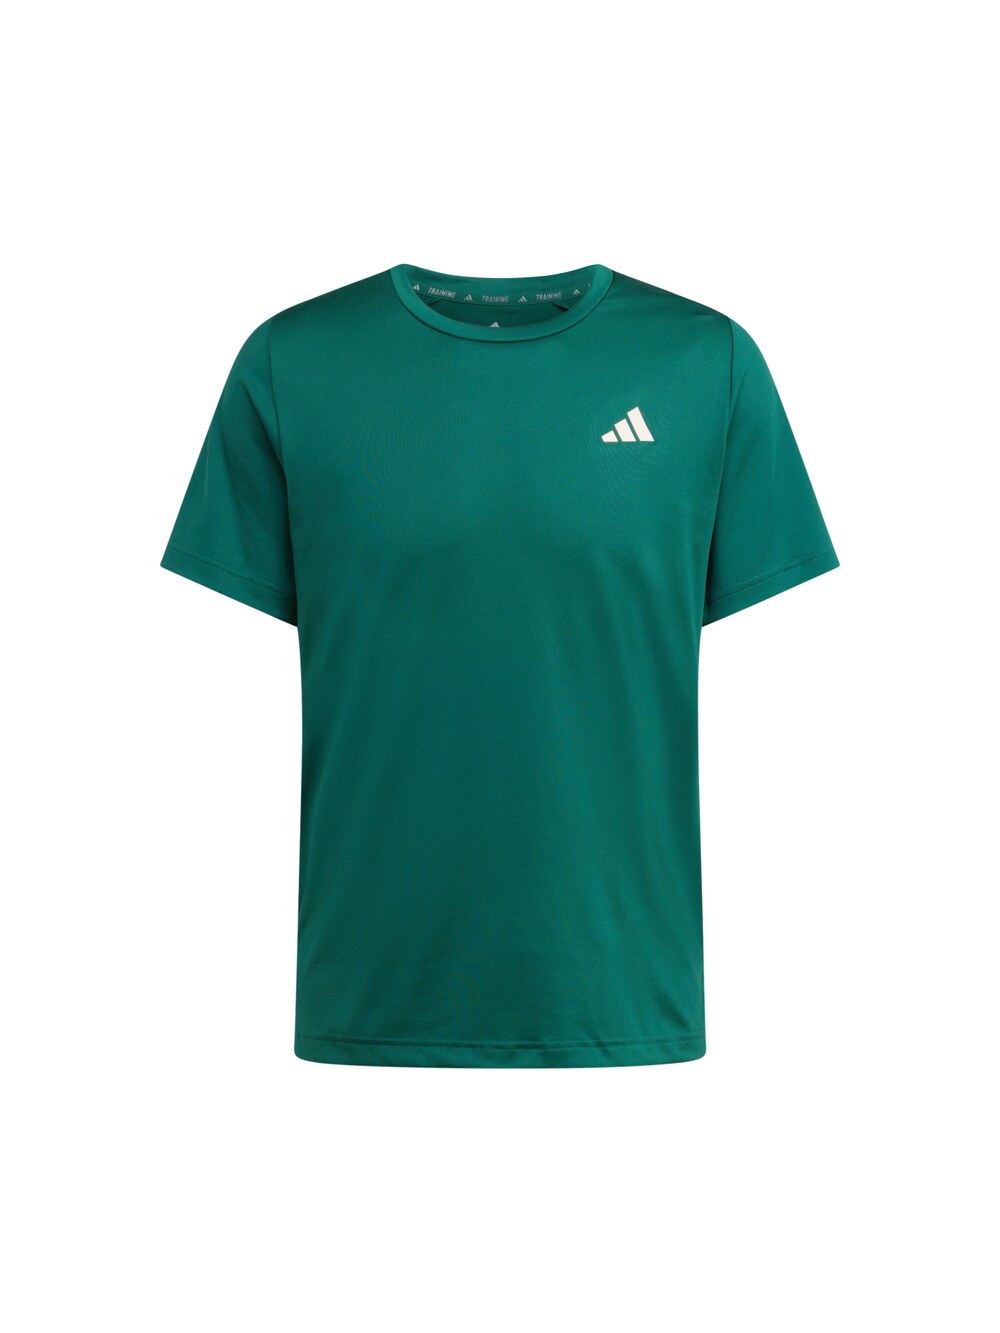 Футболка для выступлений ADIDAS PERFORMANCE Sports Club Graphic, темно-зеленый шляпа adidas training темно зеленый